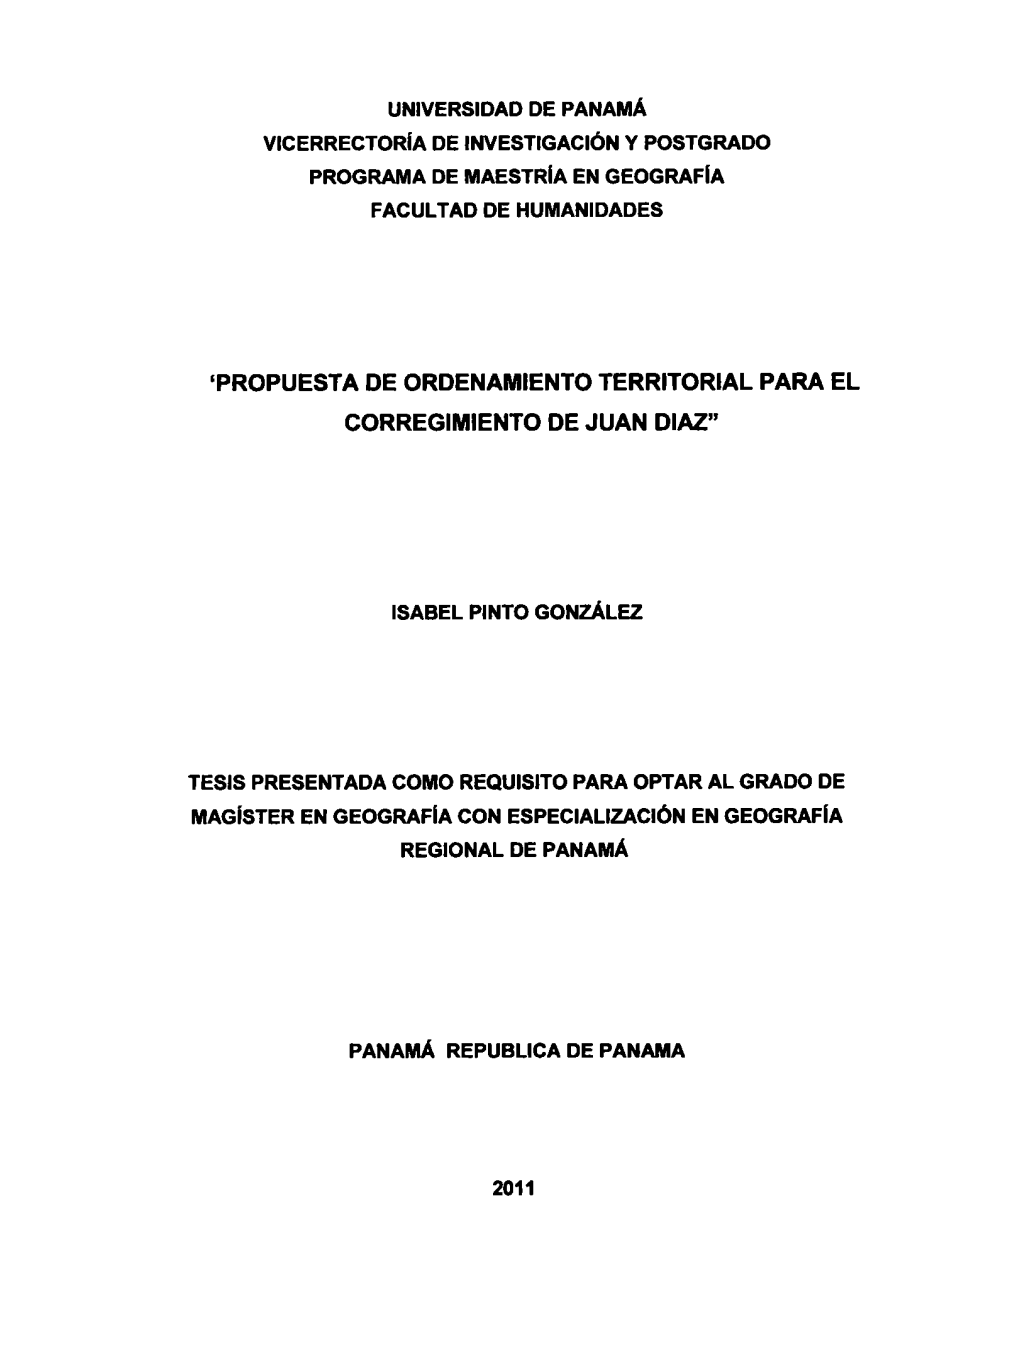 Propuesta De Ordenamiento Territorial Para El Corregimiento De Juan Diaz"